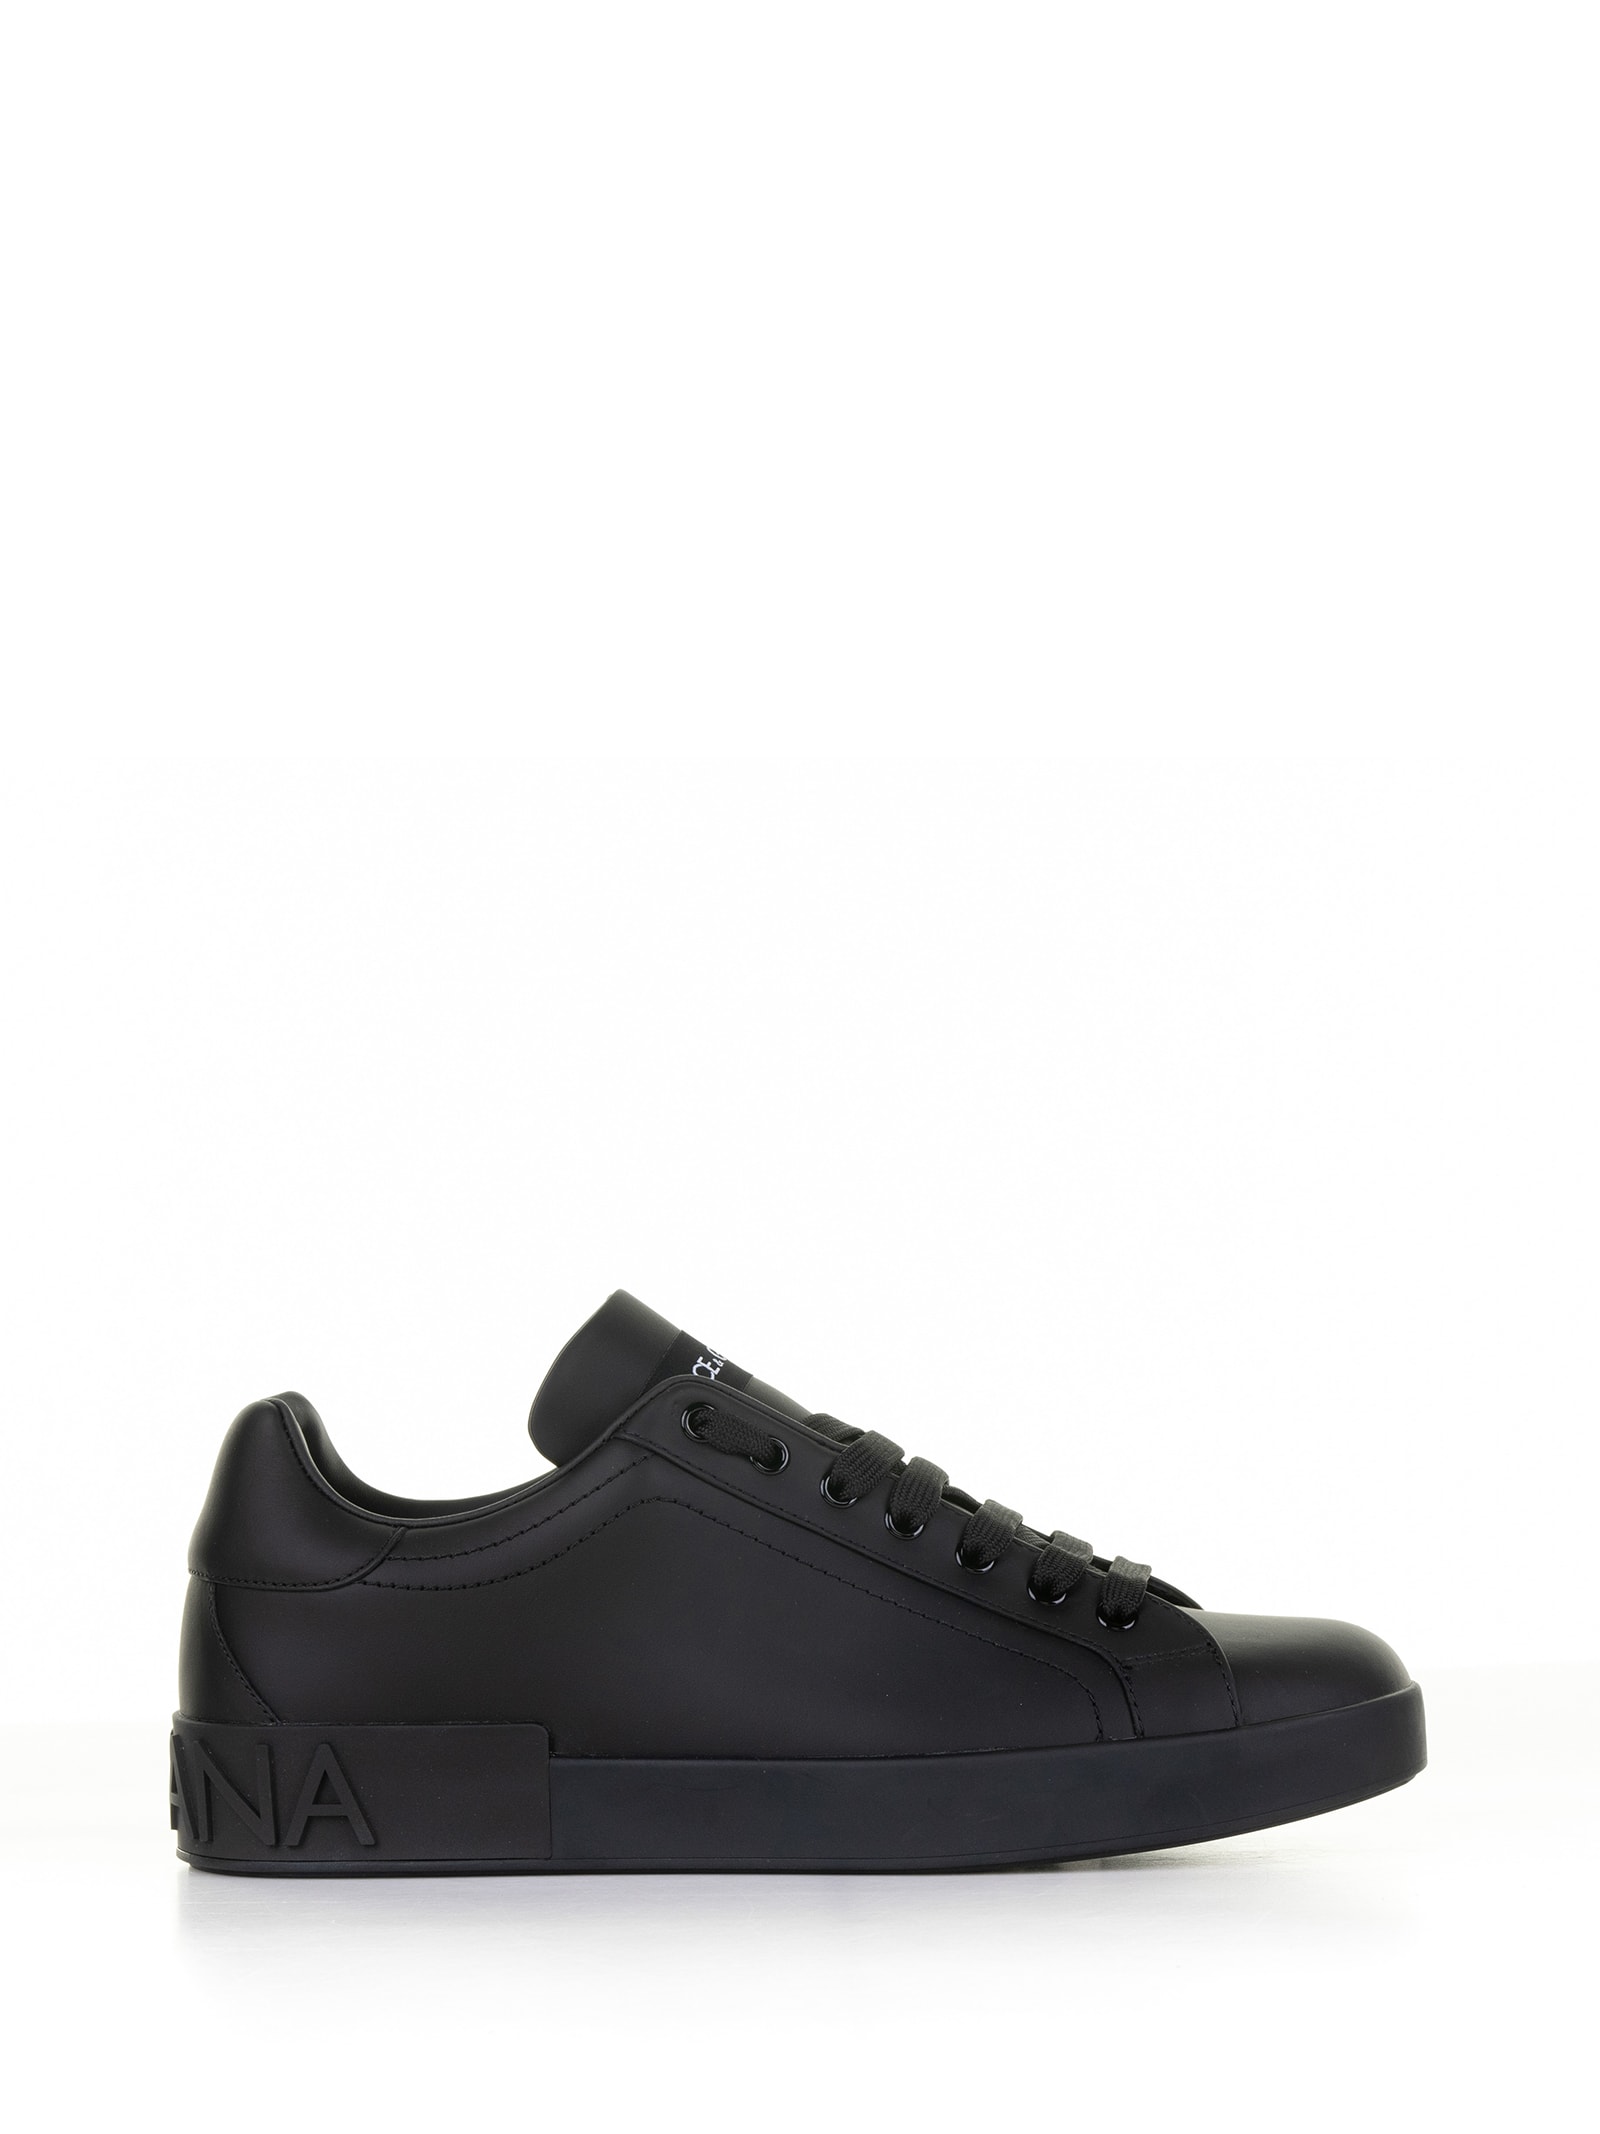 Dolce & Gabbana Portofino Sneaker In Black Leather In Nero